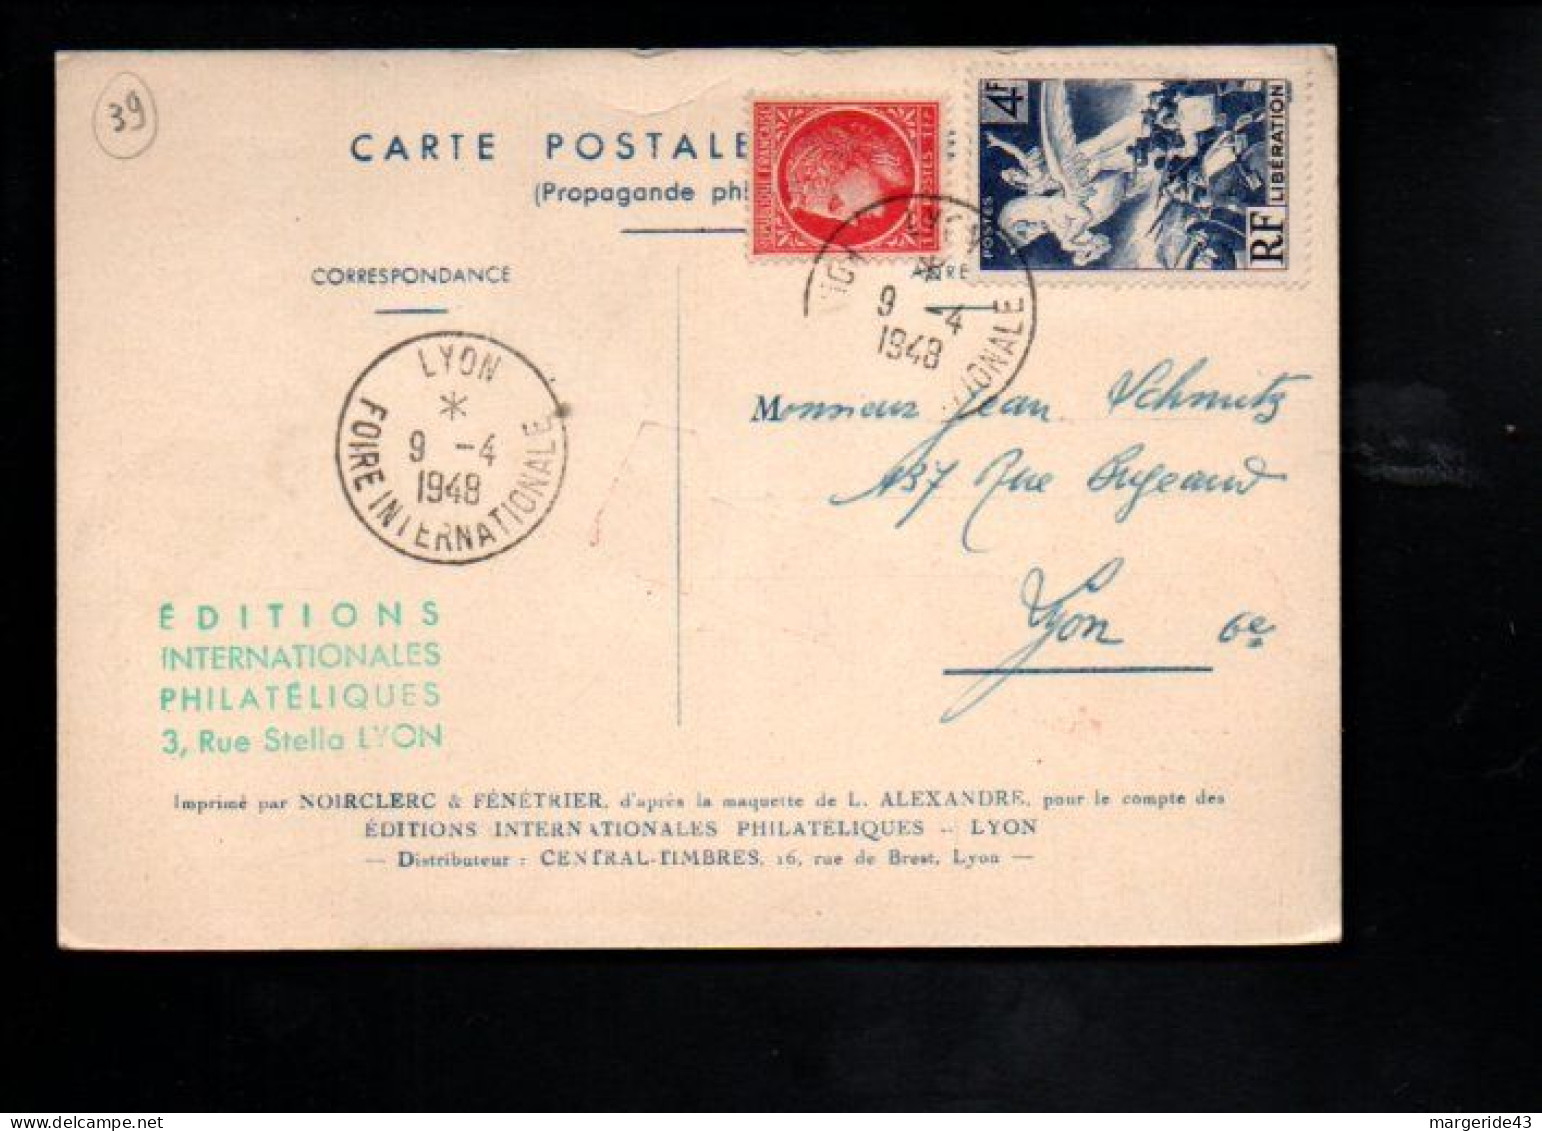 FOIRE NATIONAL D'ECHANTILLONS LYON 1948 - Cachets Commémoratifs